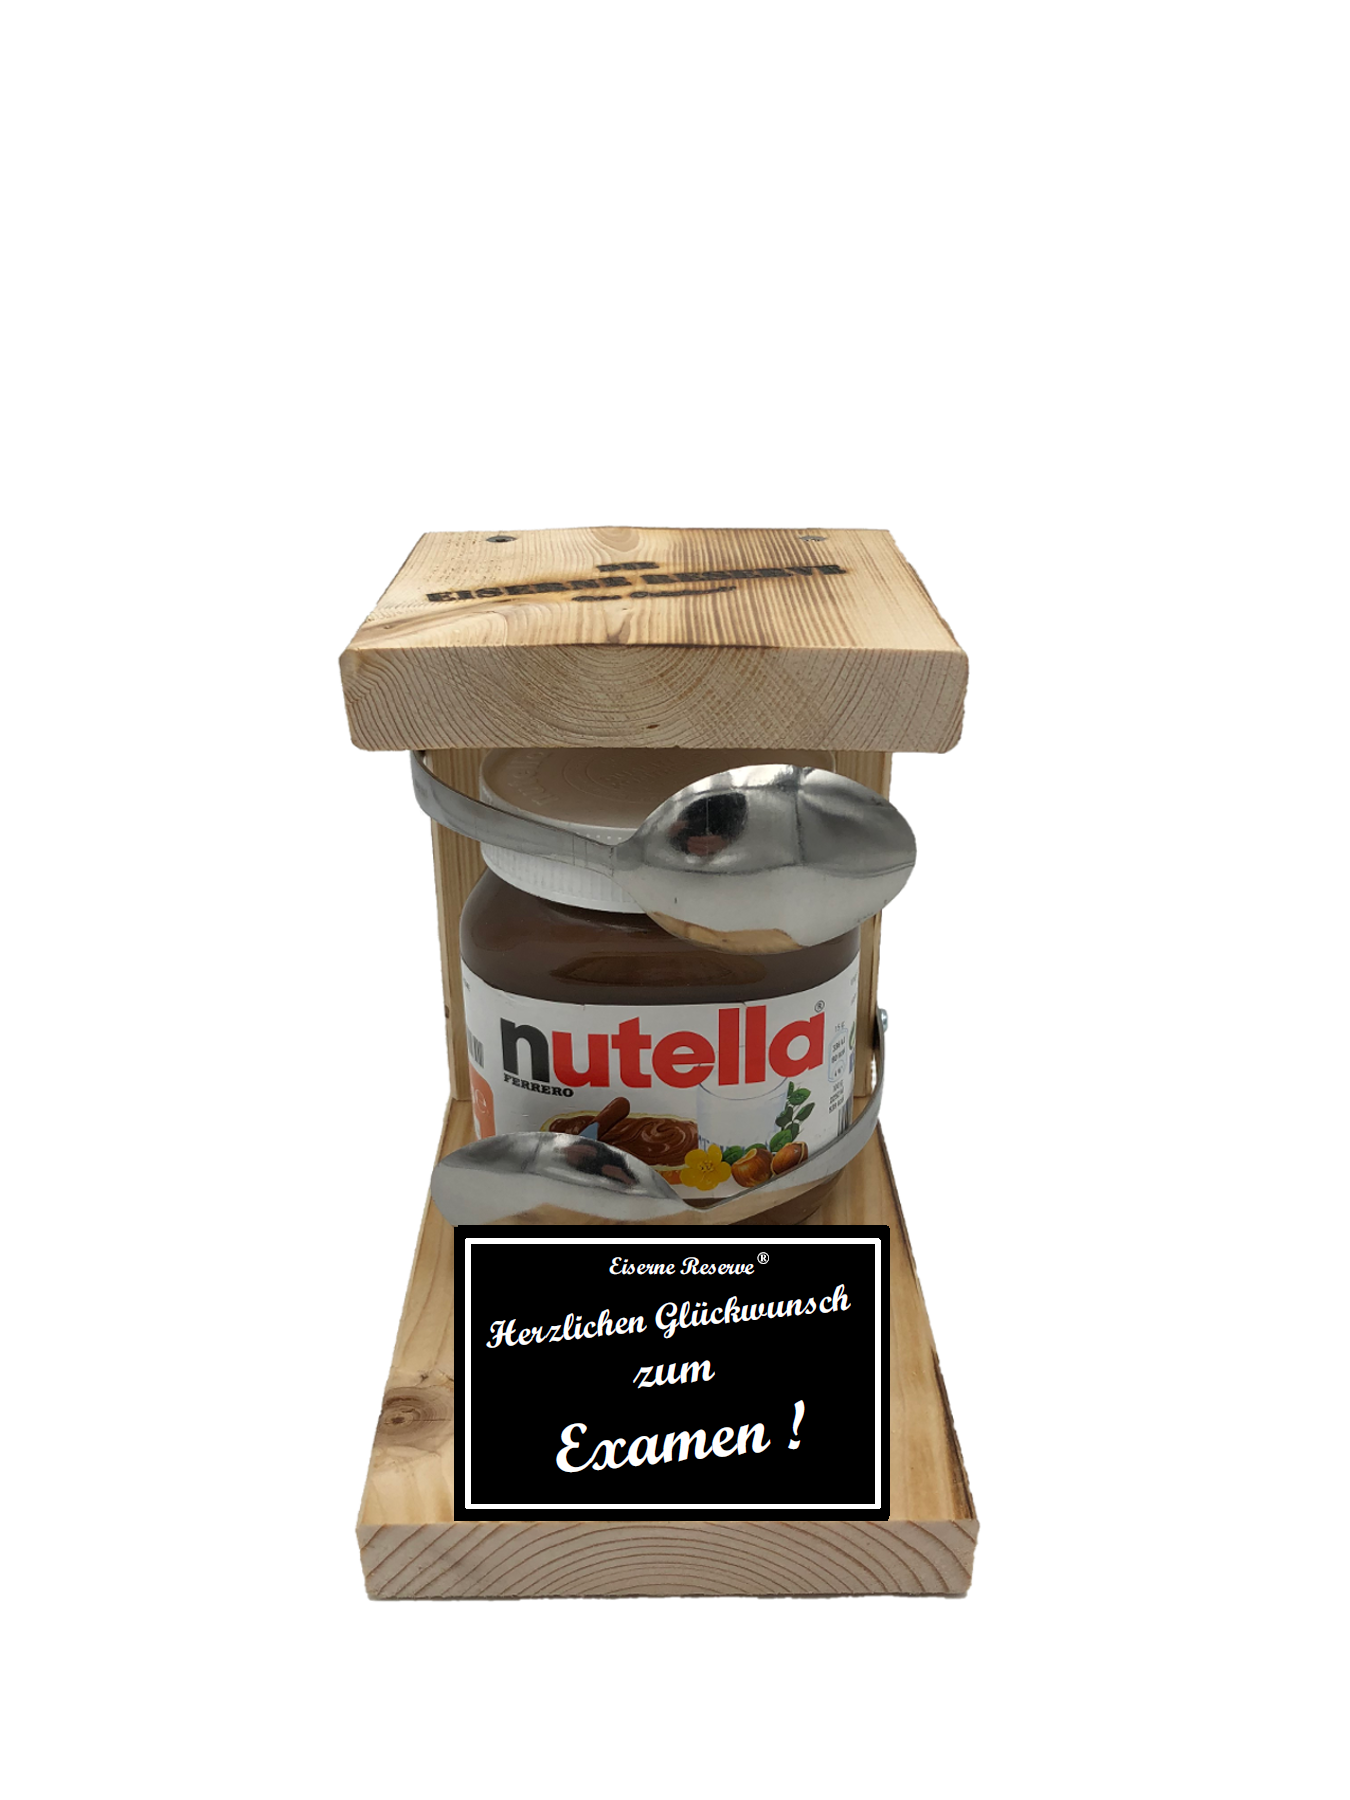 Herzlichen Glückwunsch zum Examen Löffel Nutella Geschenk - Die Nutella Geschenkidee